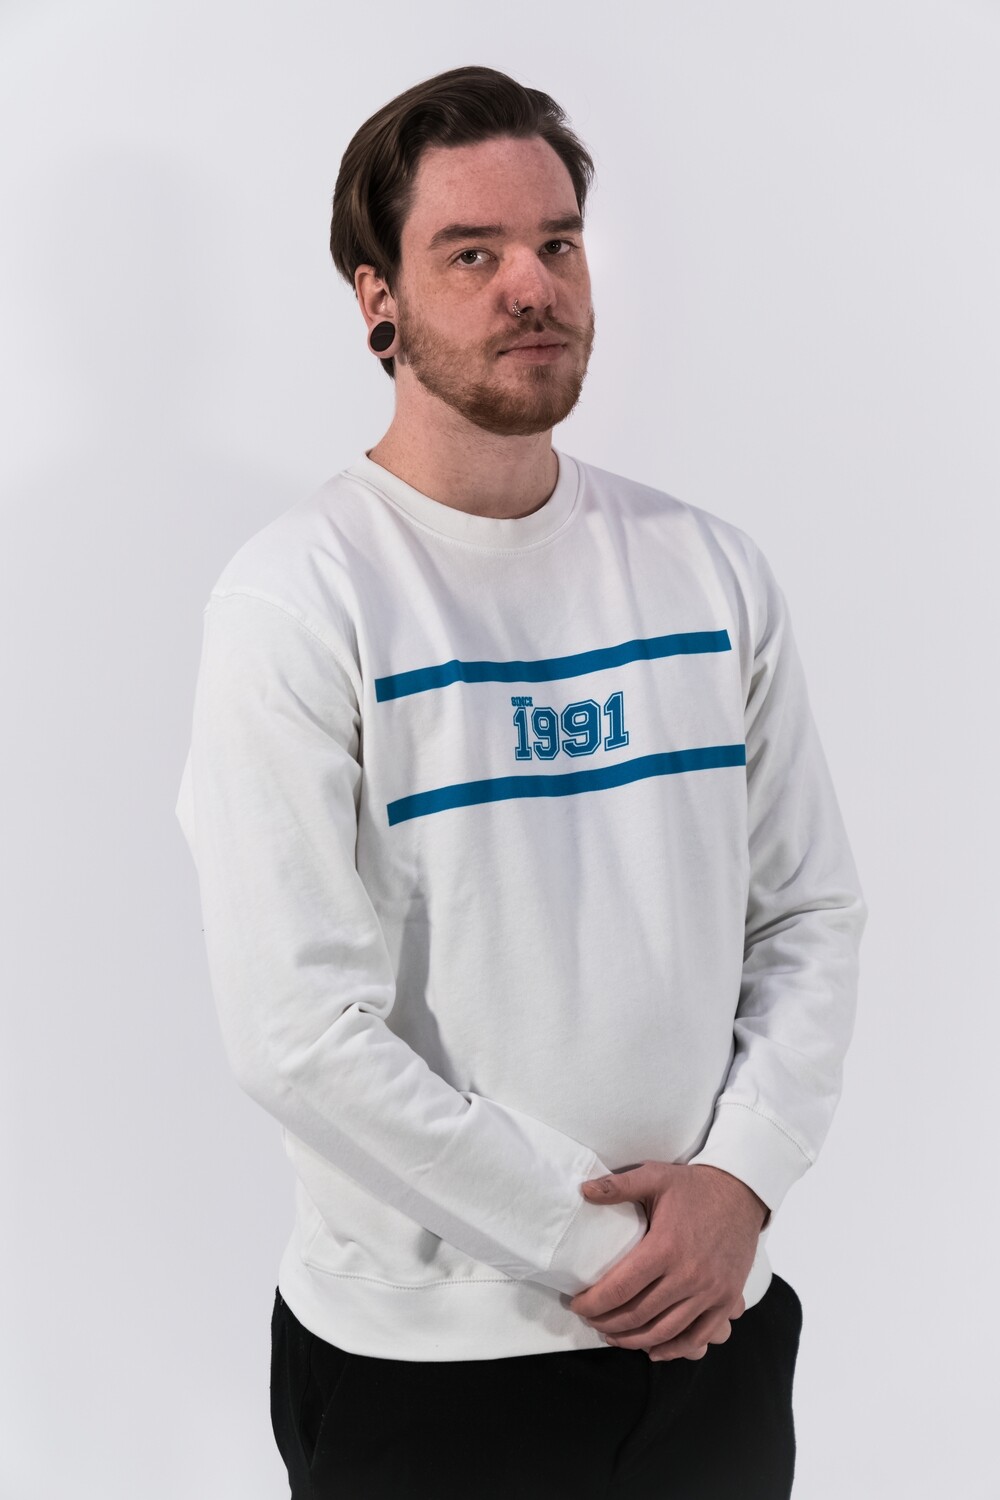 Sweatshirt "Since 1991" unisex